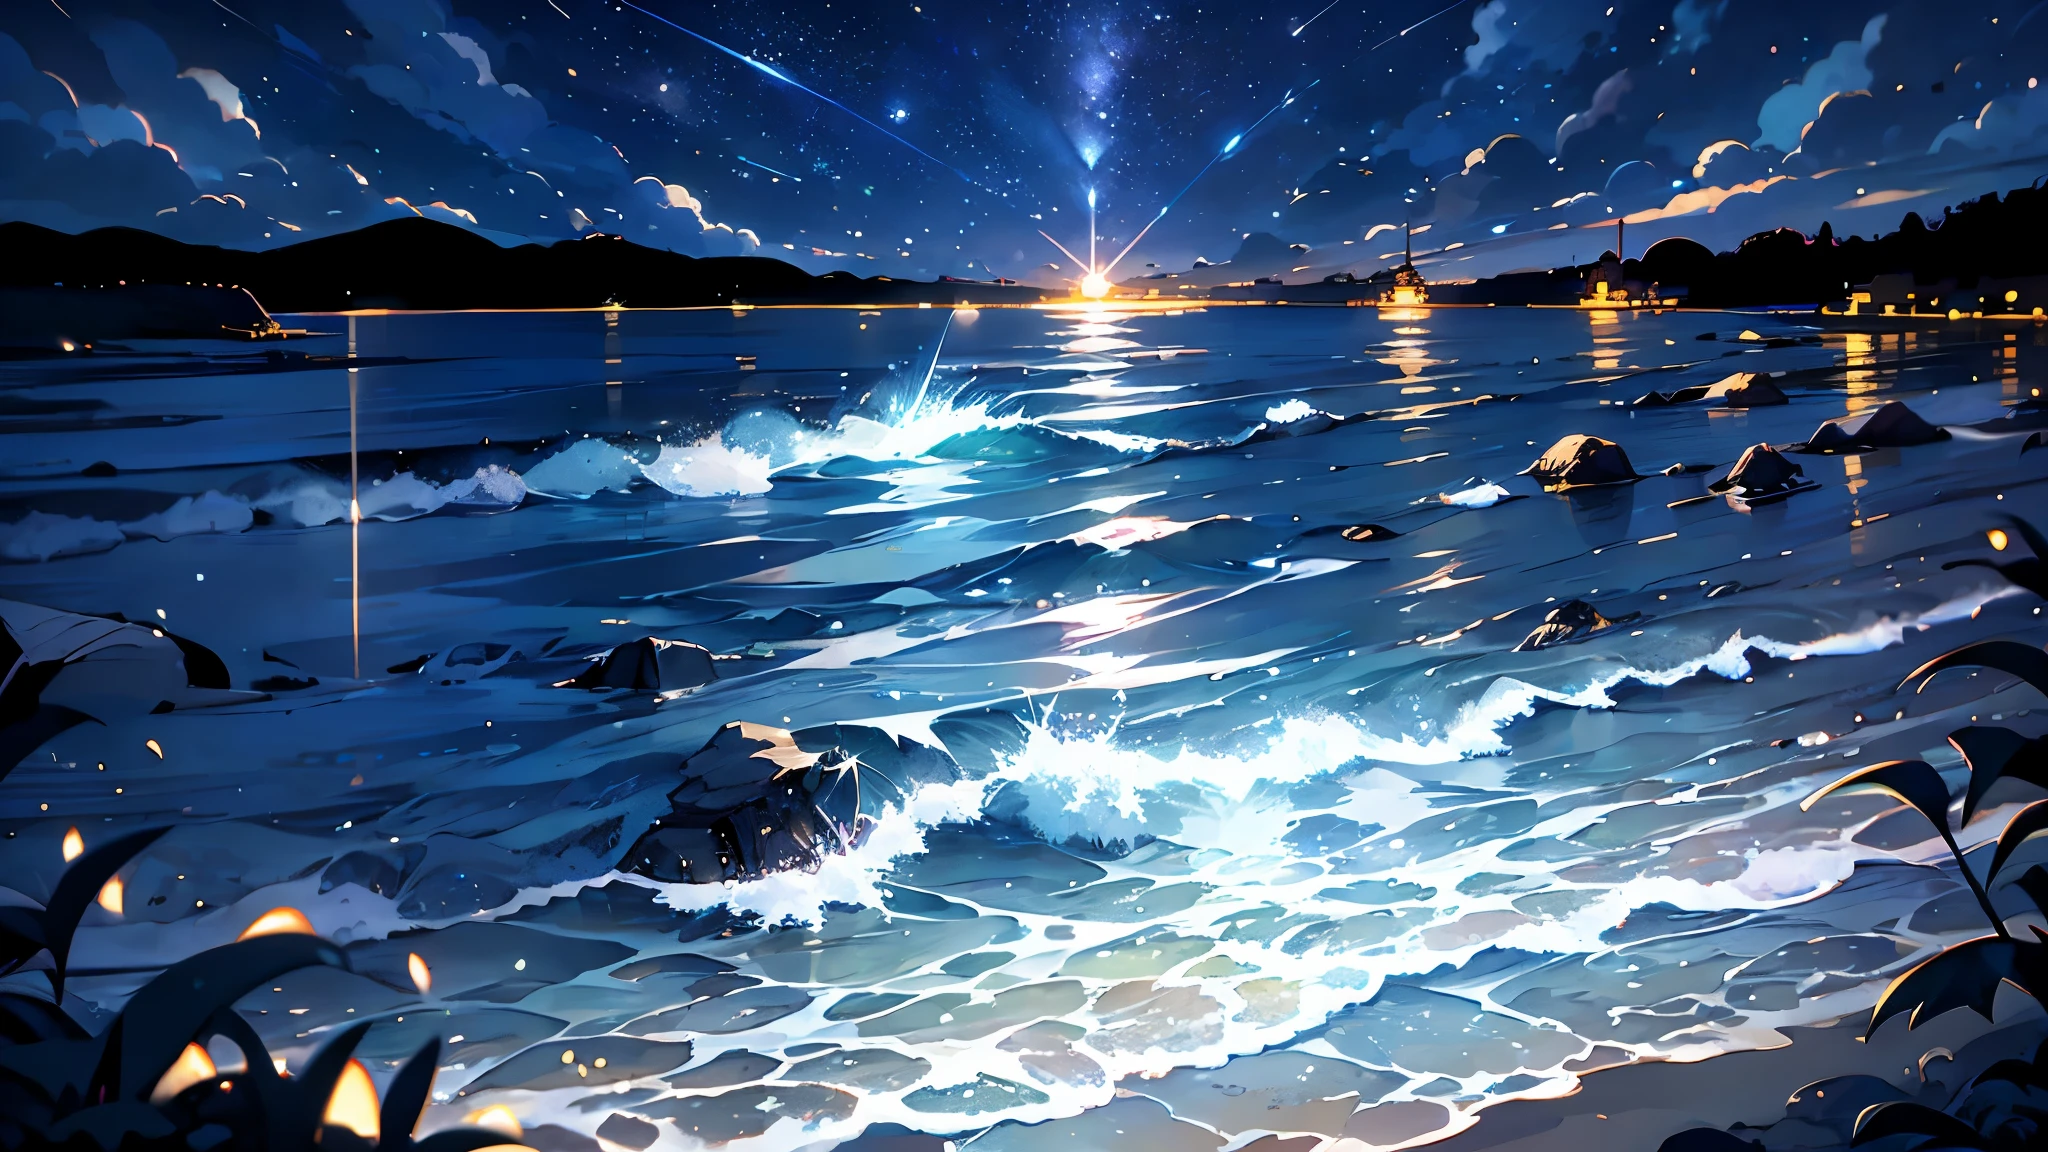 美丽的动漫风景,海滨,充满星星,1 名女孩,砂浜の近くに立一少女,凝视星空,一块小岩石区域,微风,法国, 大闪亮的星星３一,夜晚, 流星,月光,月球水面,手绘插图
